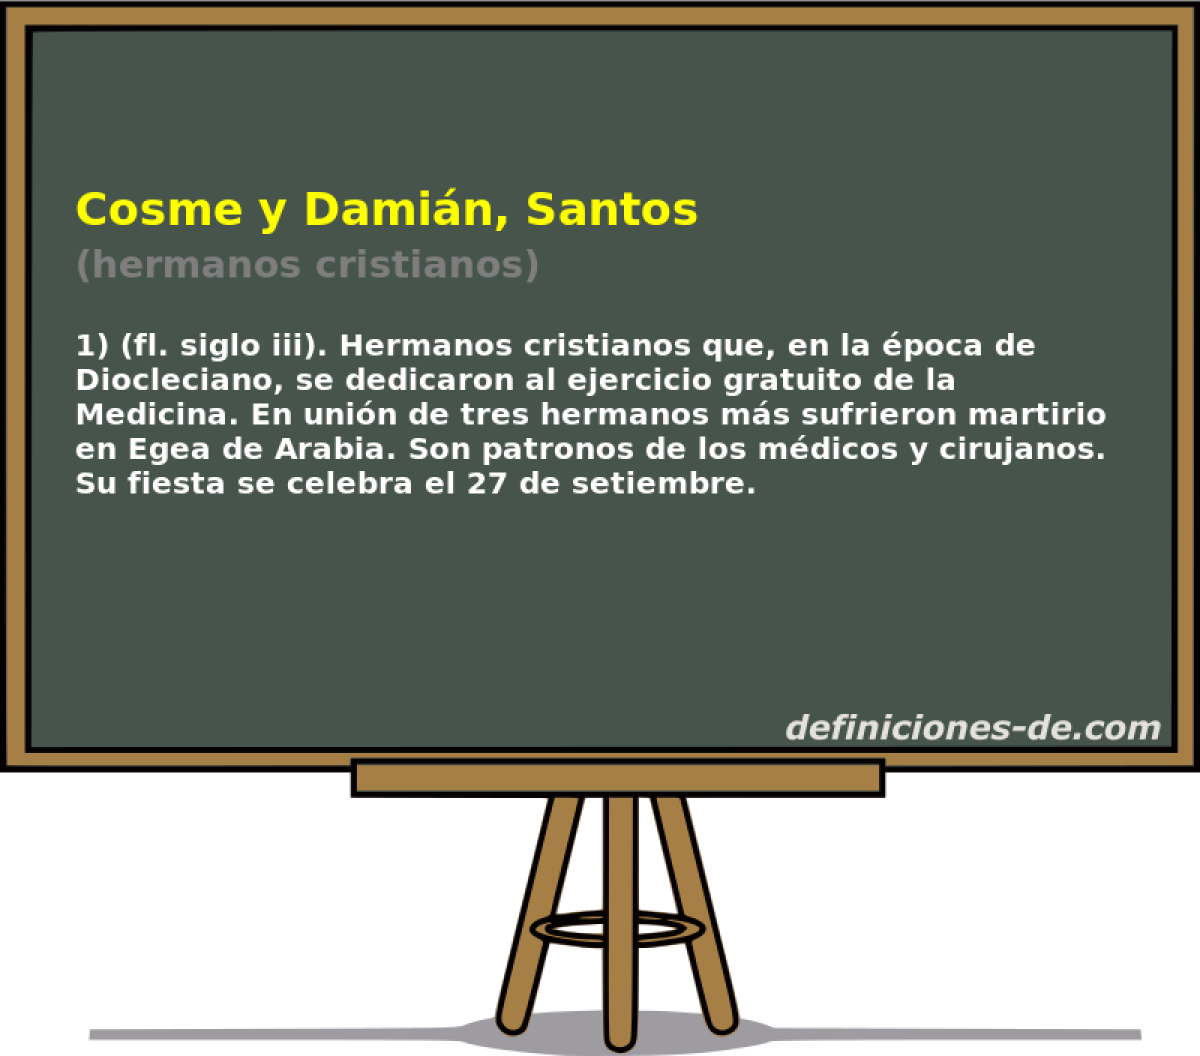 Cosme y Damin, Santos (hermanos cristianos)